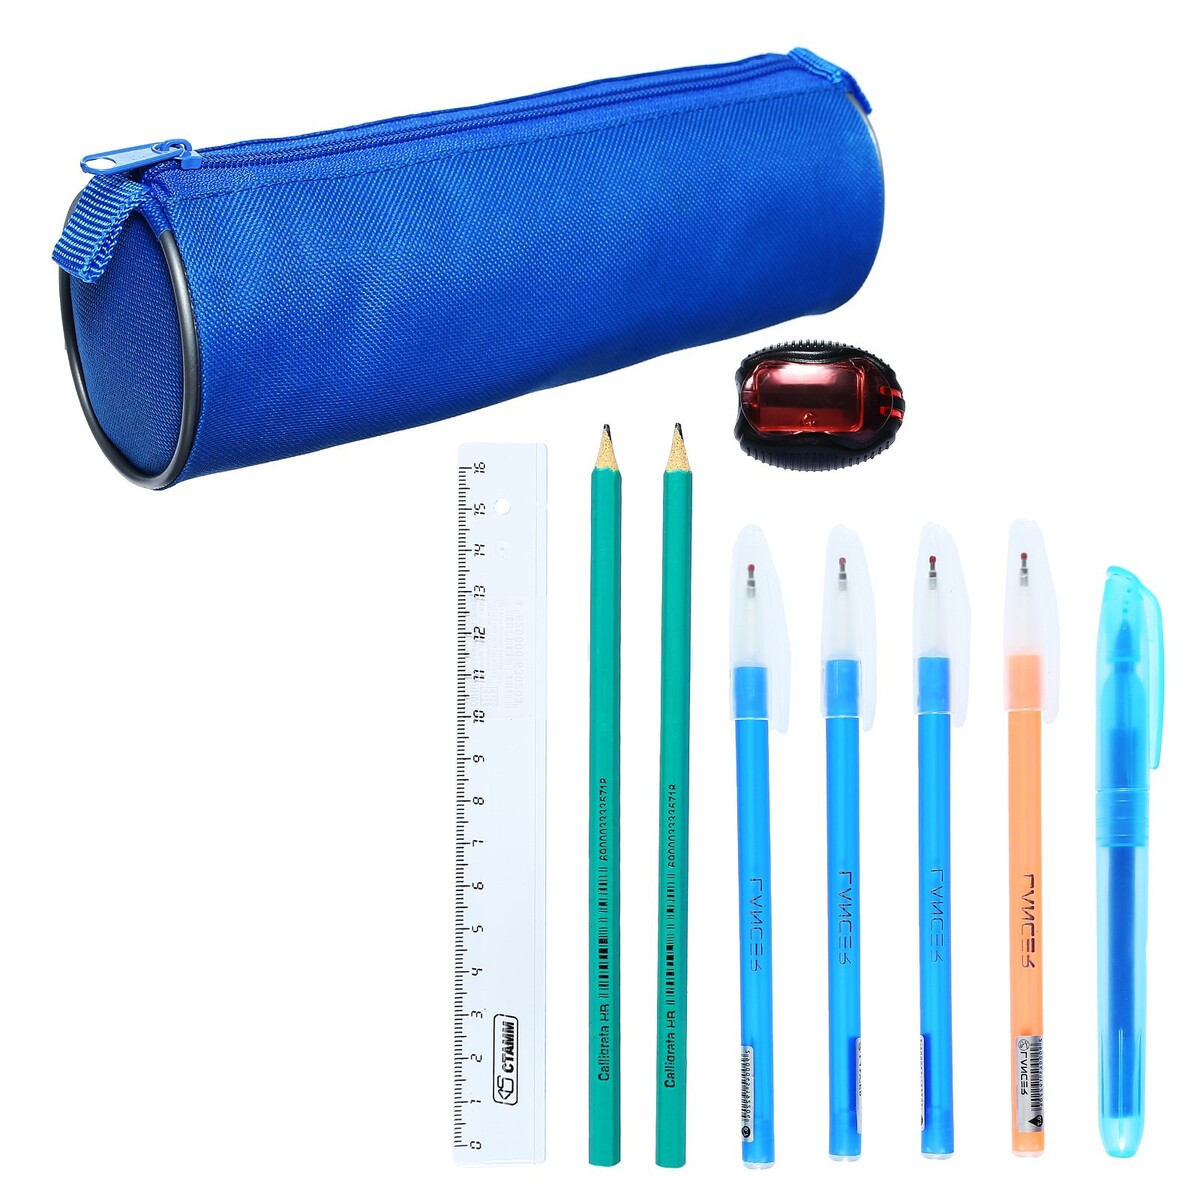 Набор канцелярский 10 предметов (пенал-тубус 65 х 210 мм, ручки 4 штуки цвет синий , линейка 15 см, точилка, карандаш 2 штуки, текстовыделитель), синий набор канцелярских принадлежностей в стакане 12 предметов